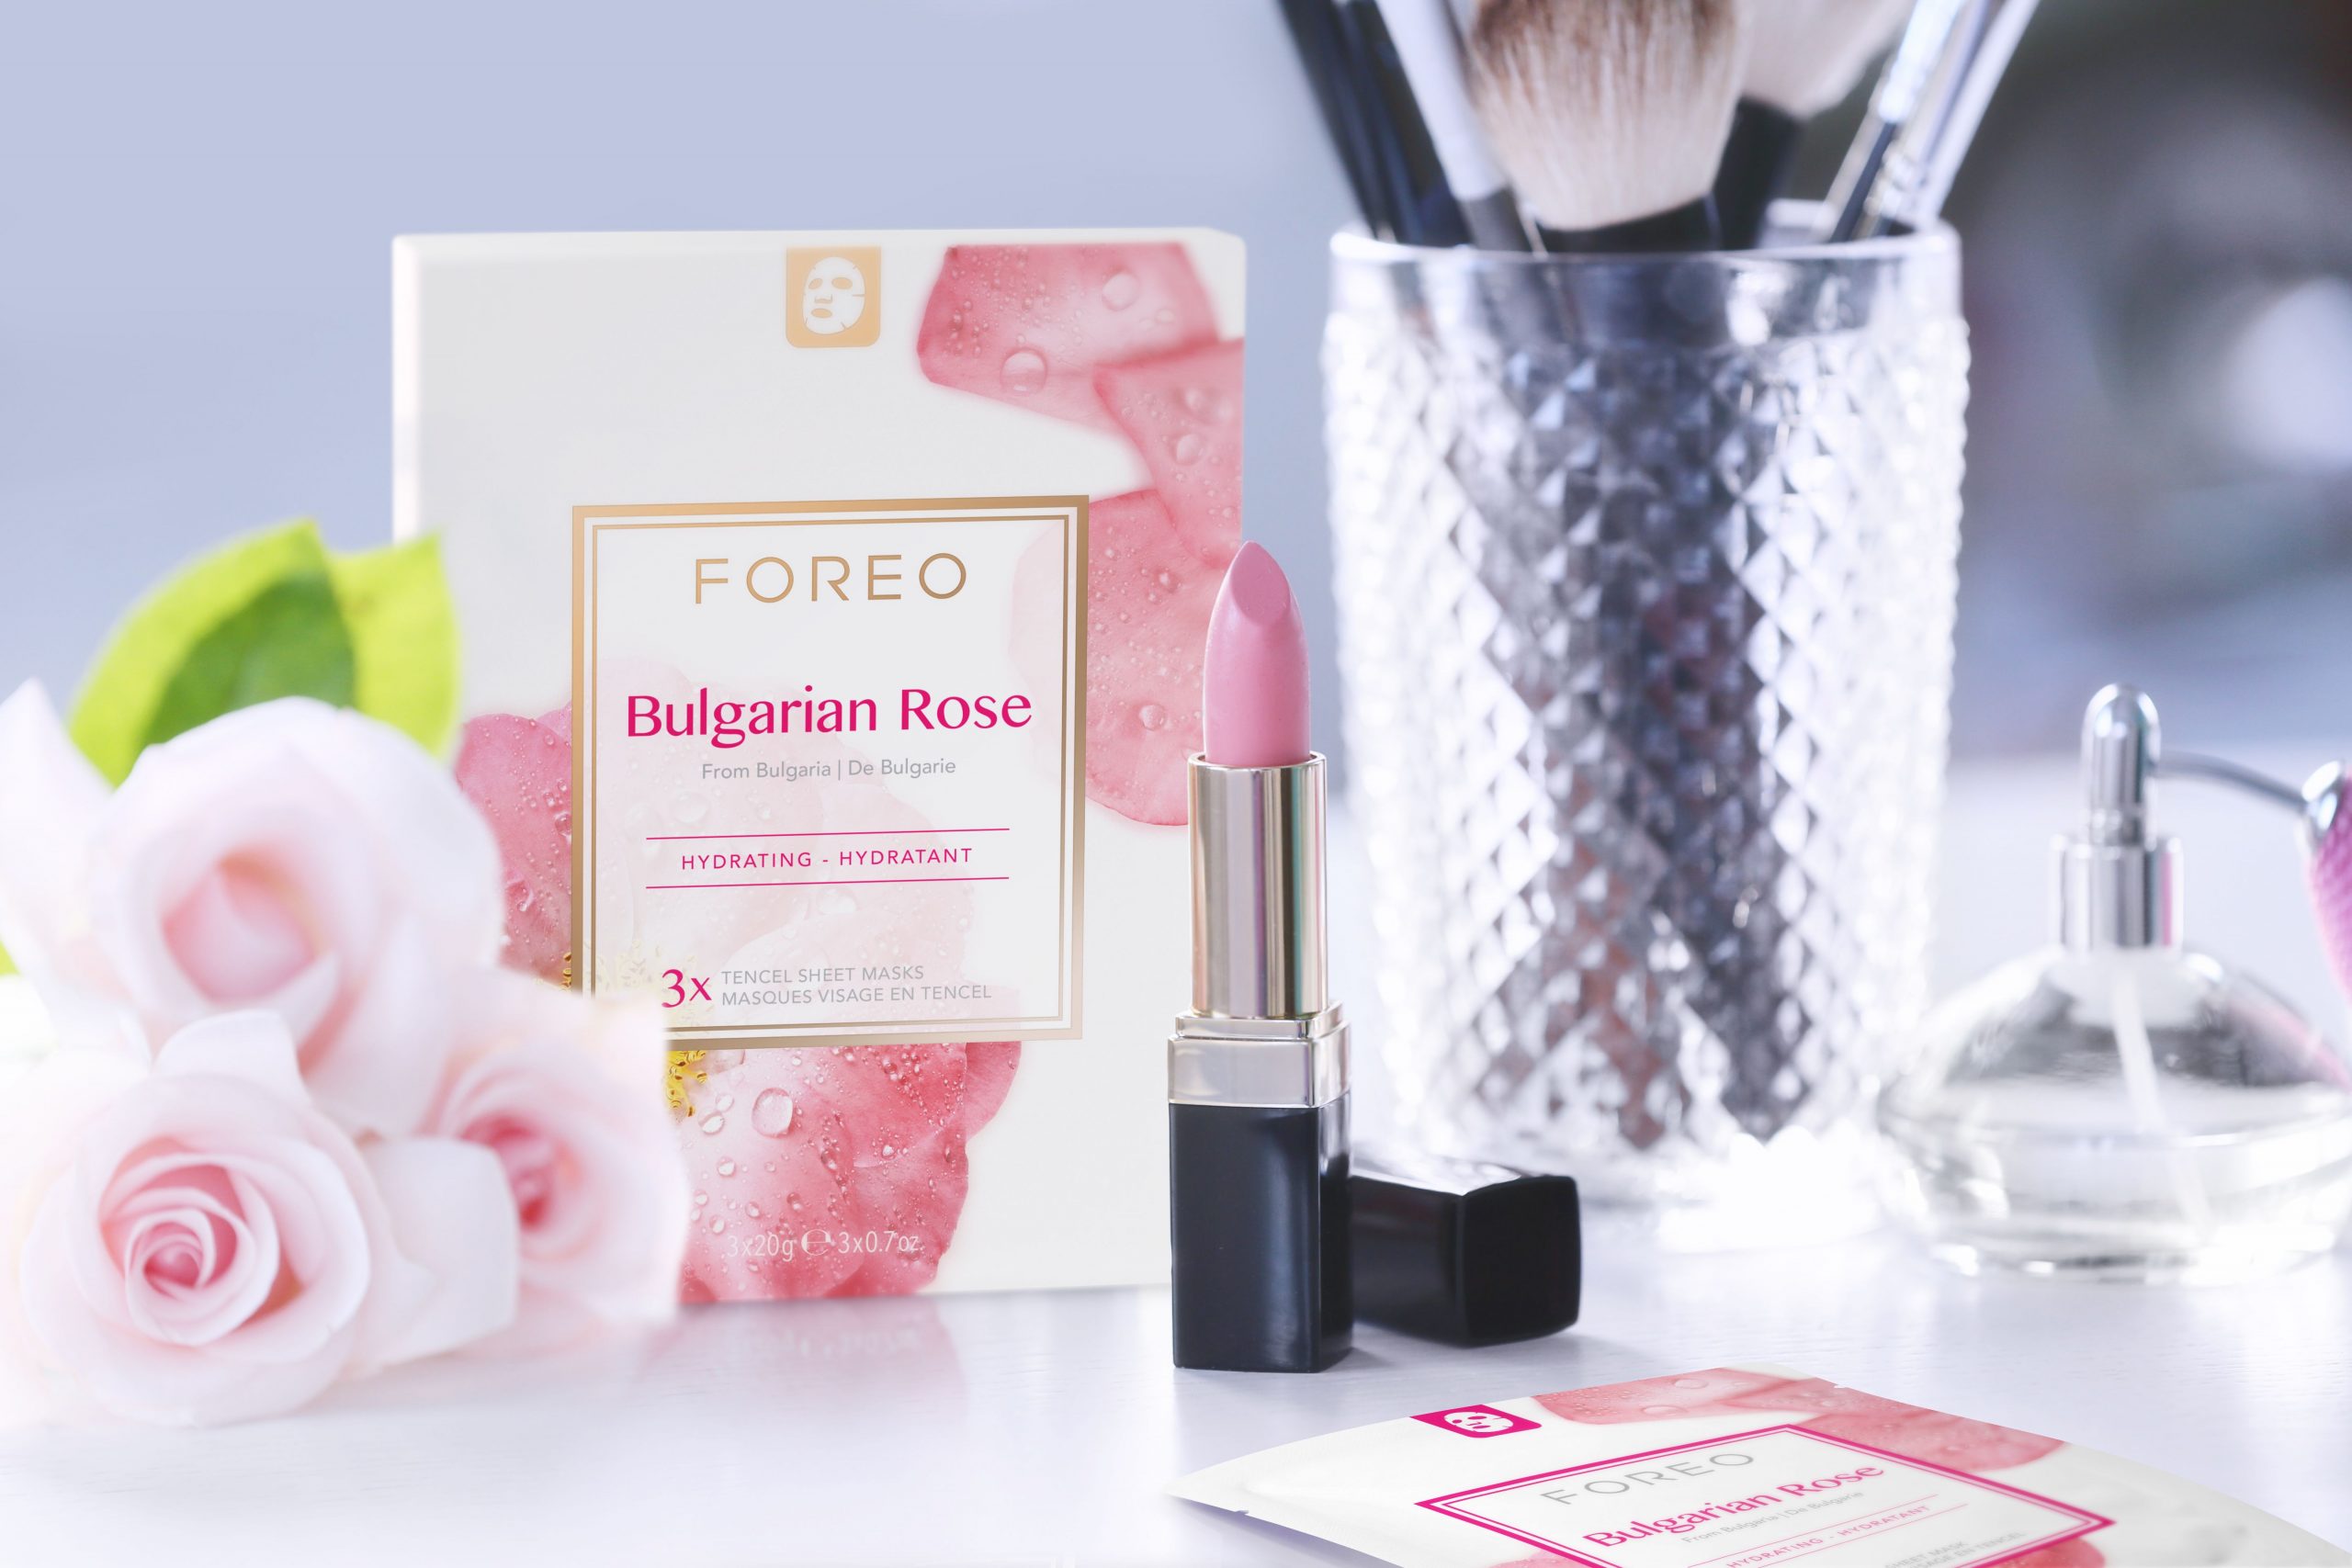 Neka vaša koža zablista u prvim danima proljeća uz FOREO beauty tech proizvode